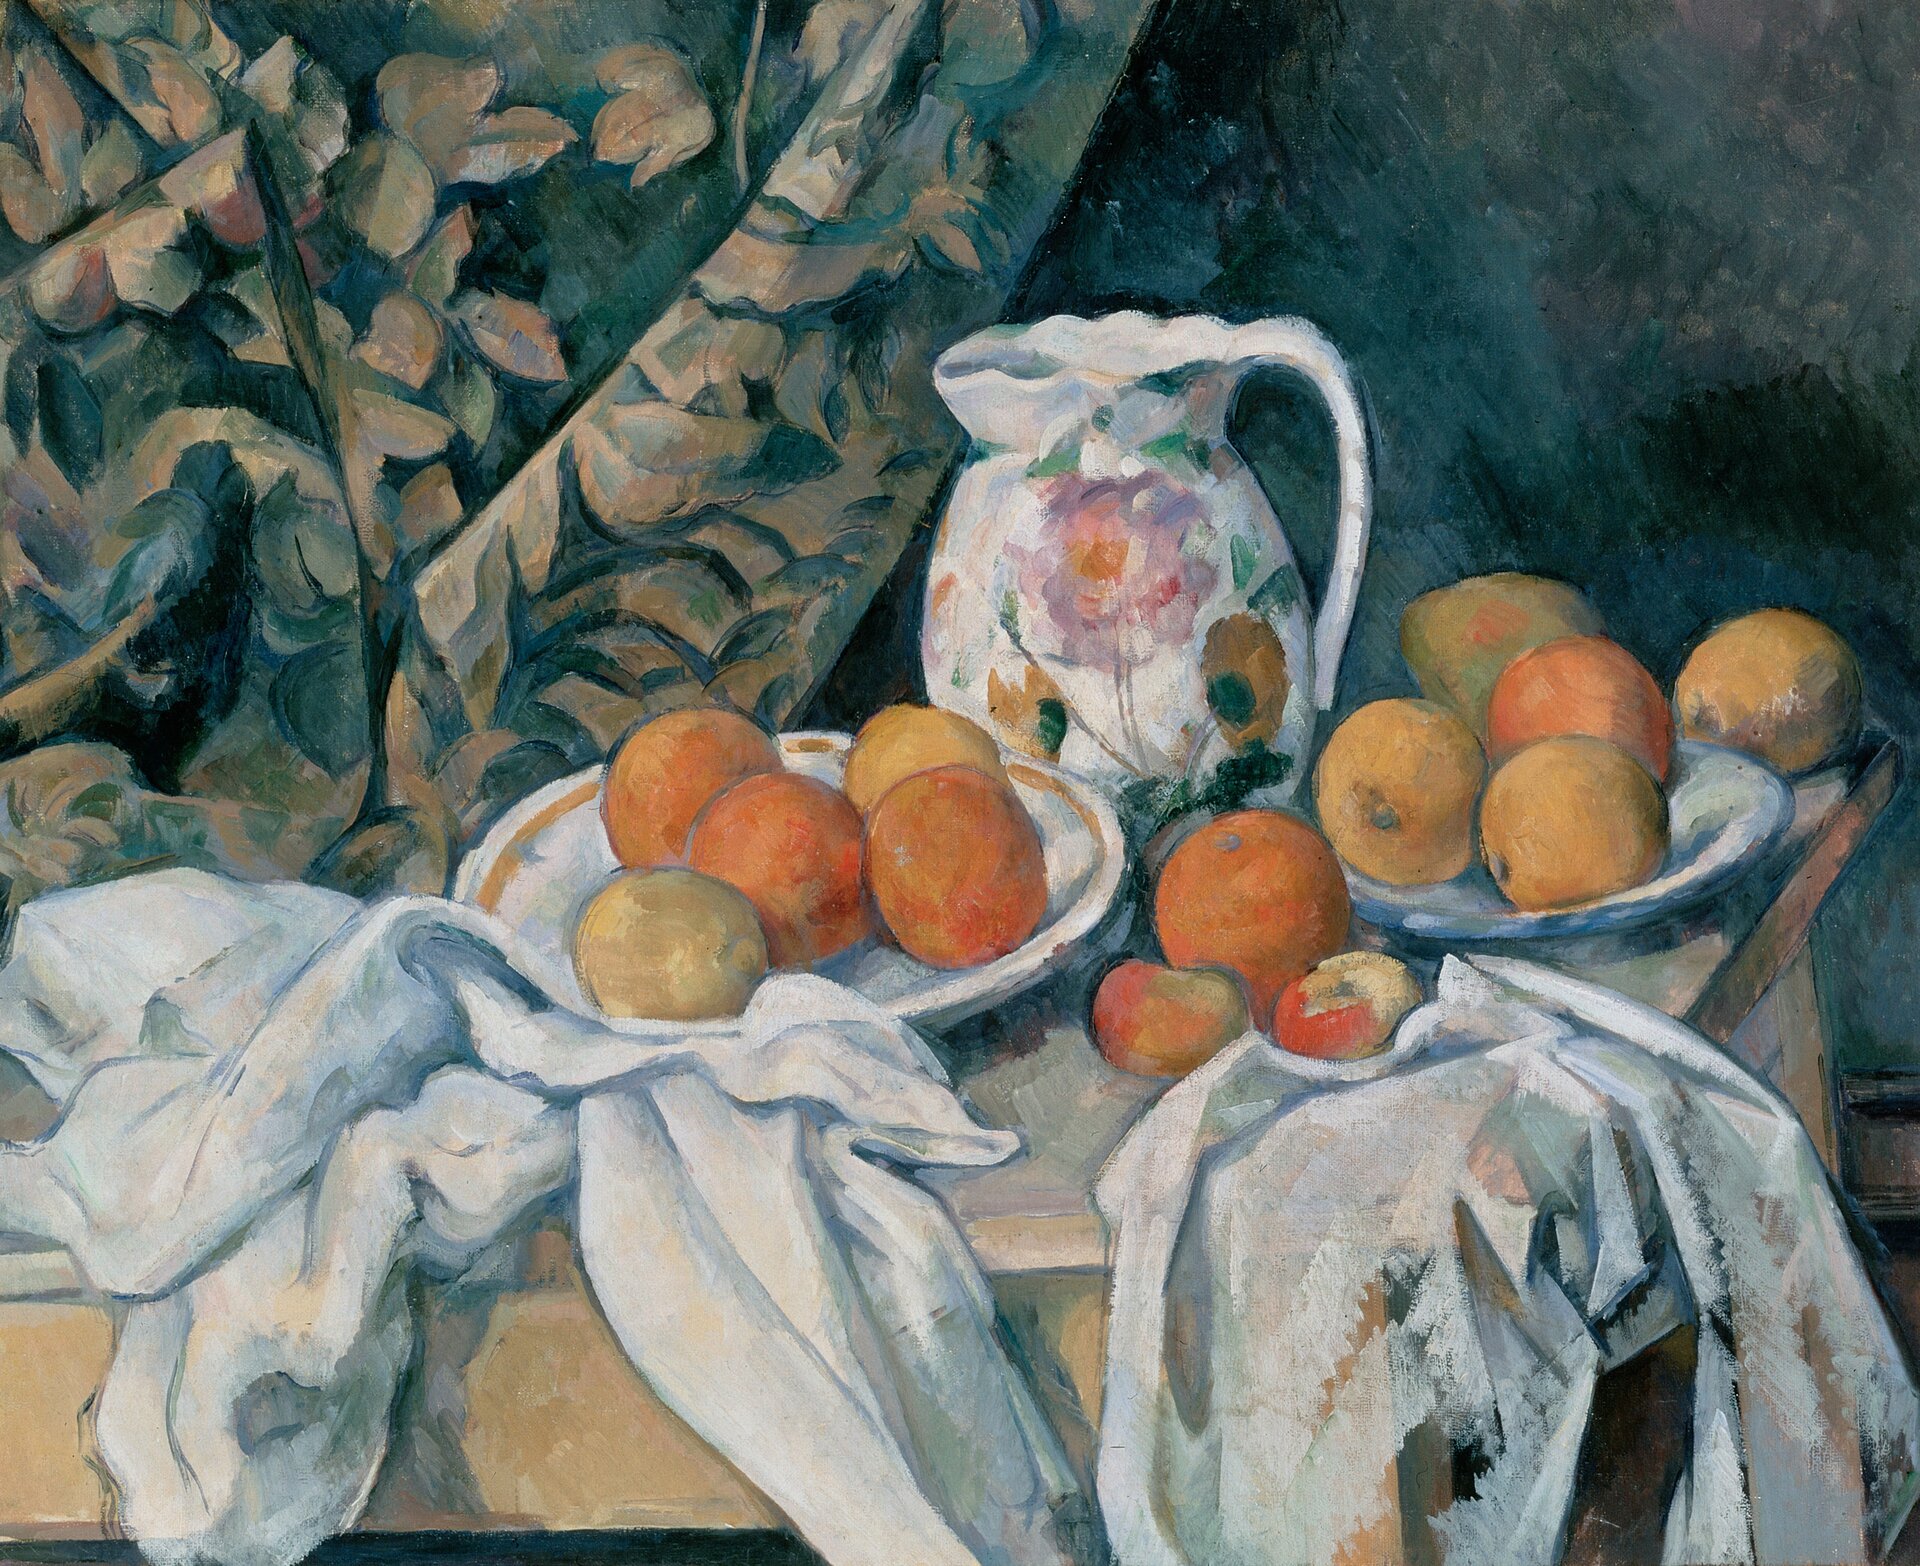 Martwa natura z zasłoną Źródło: Paul Cézanne, Martwa natura z zasłoną, ok. 1898, olej na płótnie, domena publiczna.